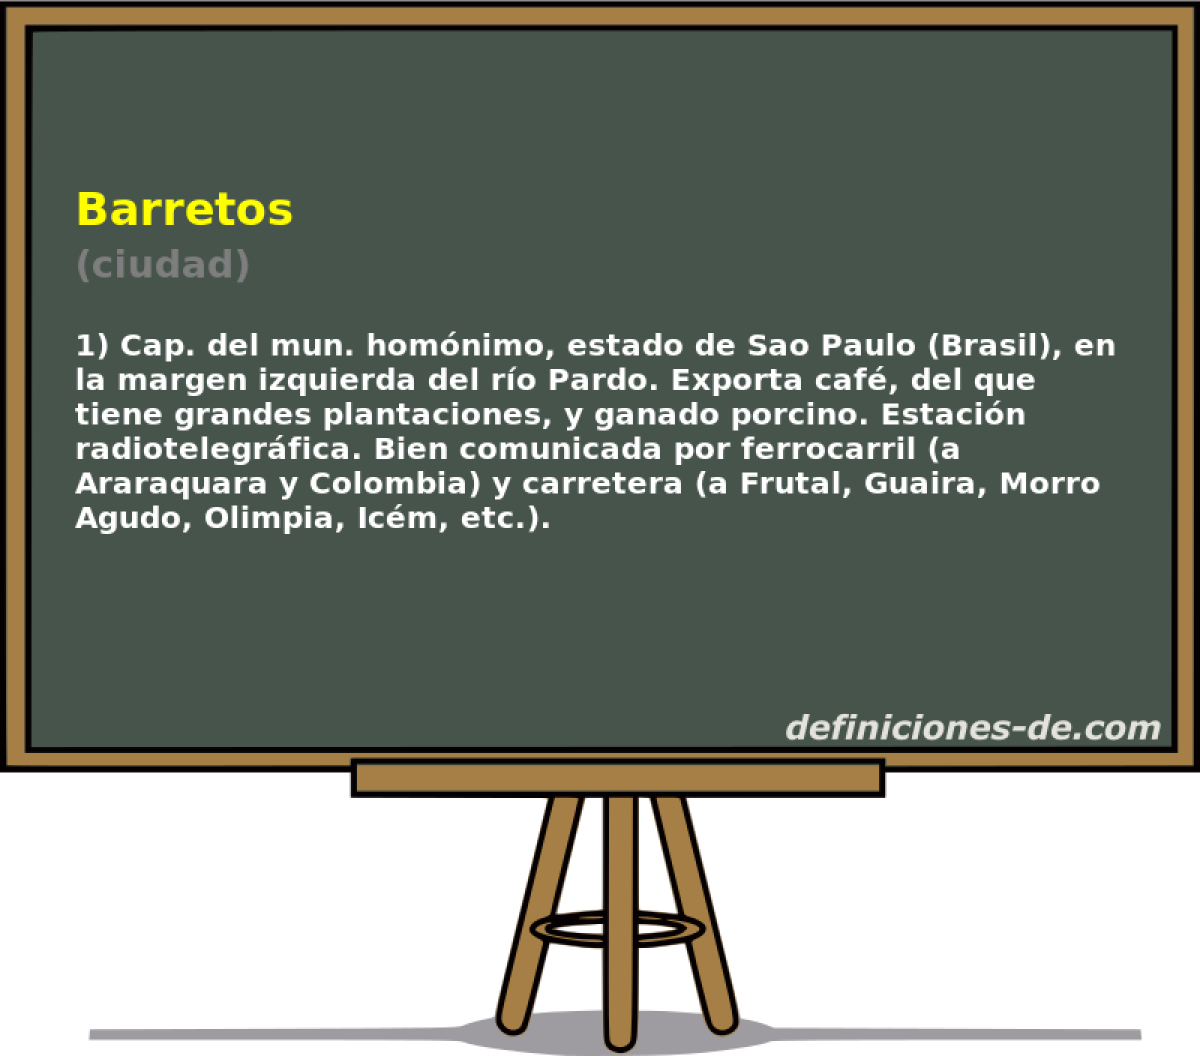 Barretos (ciudad)